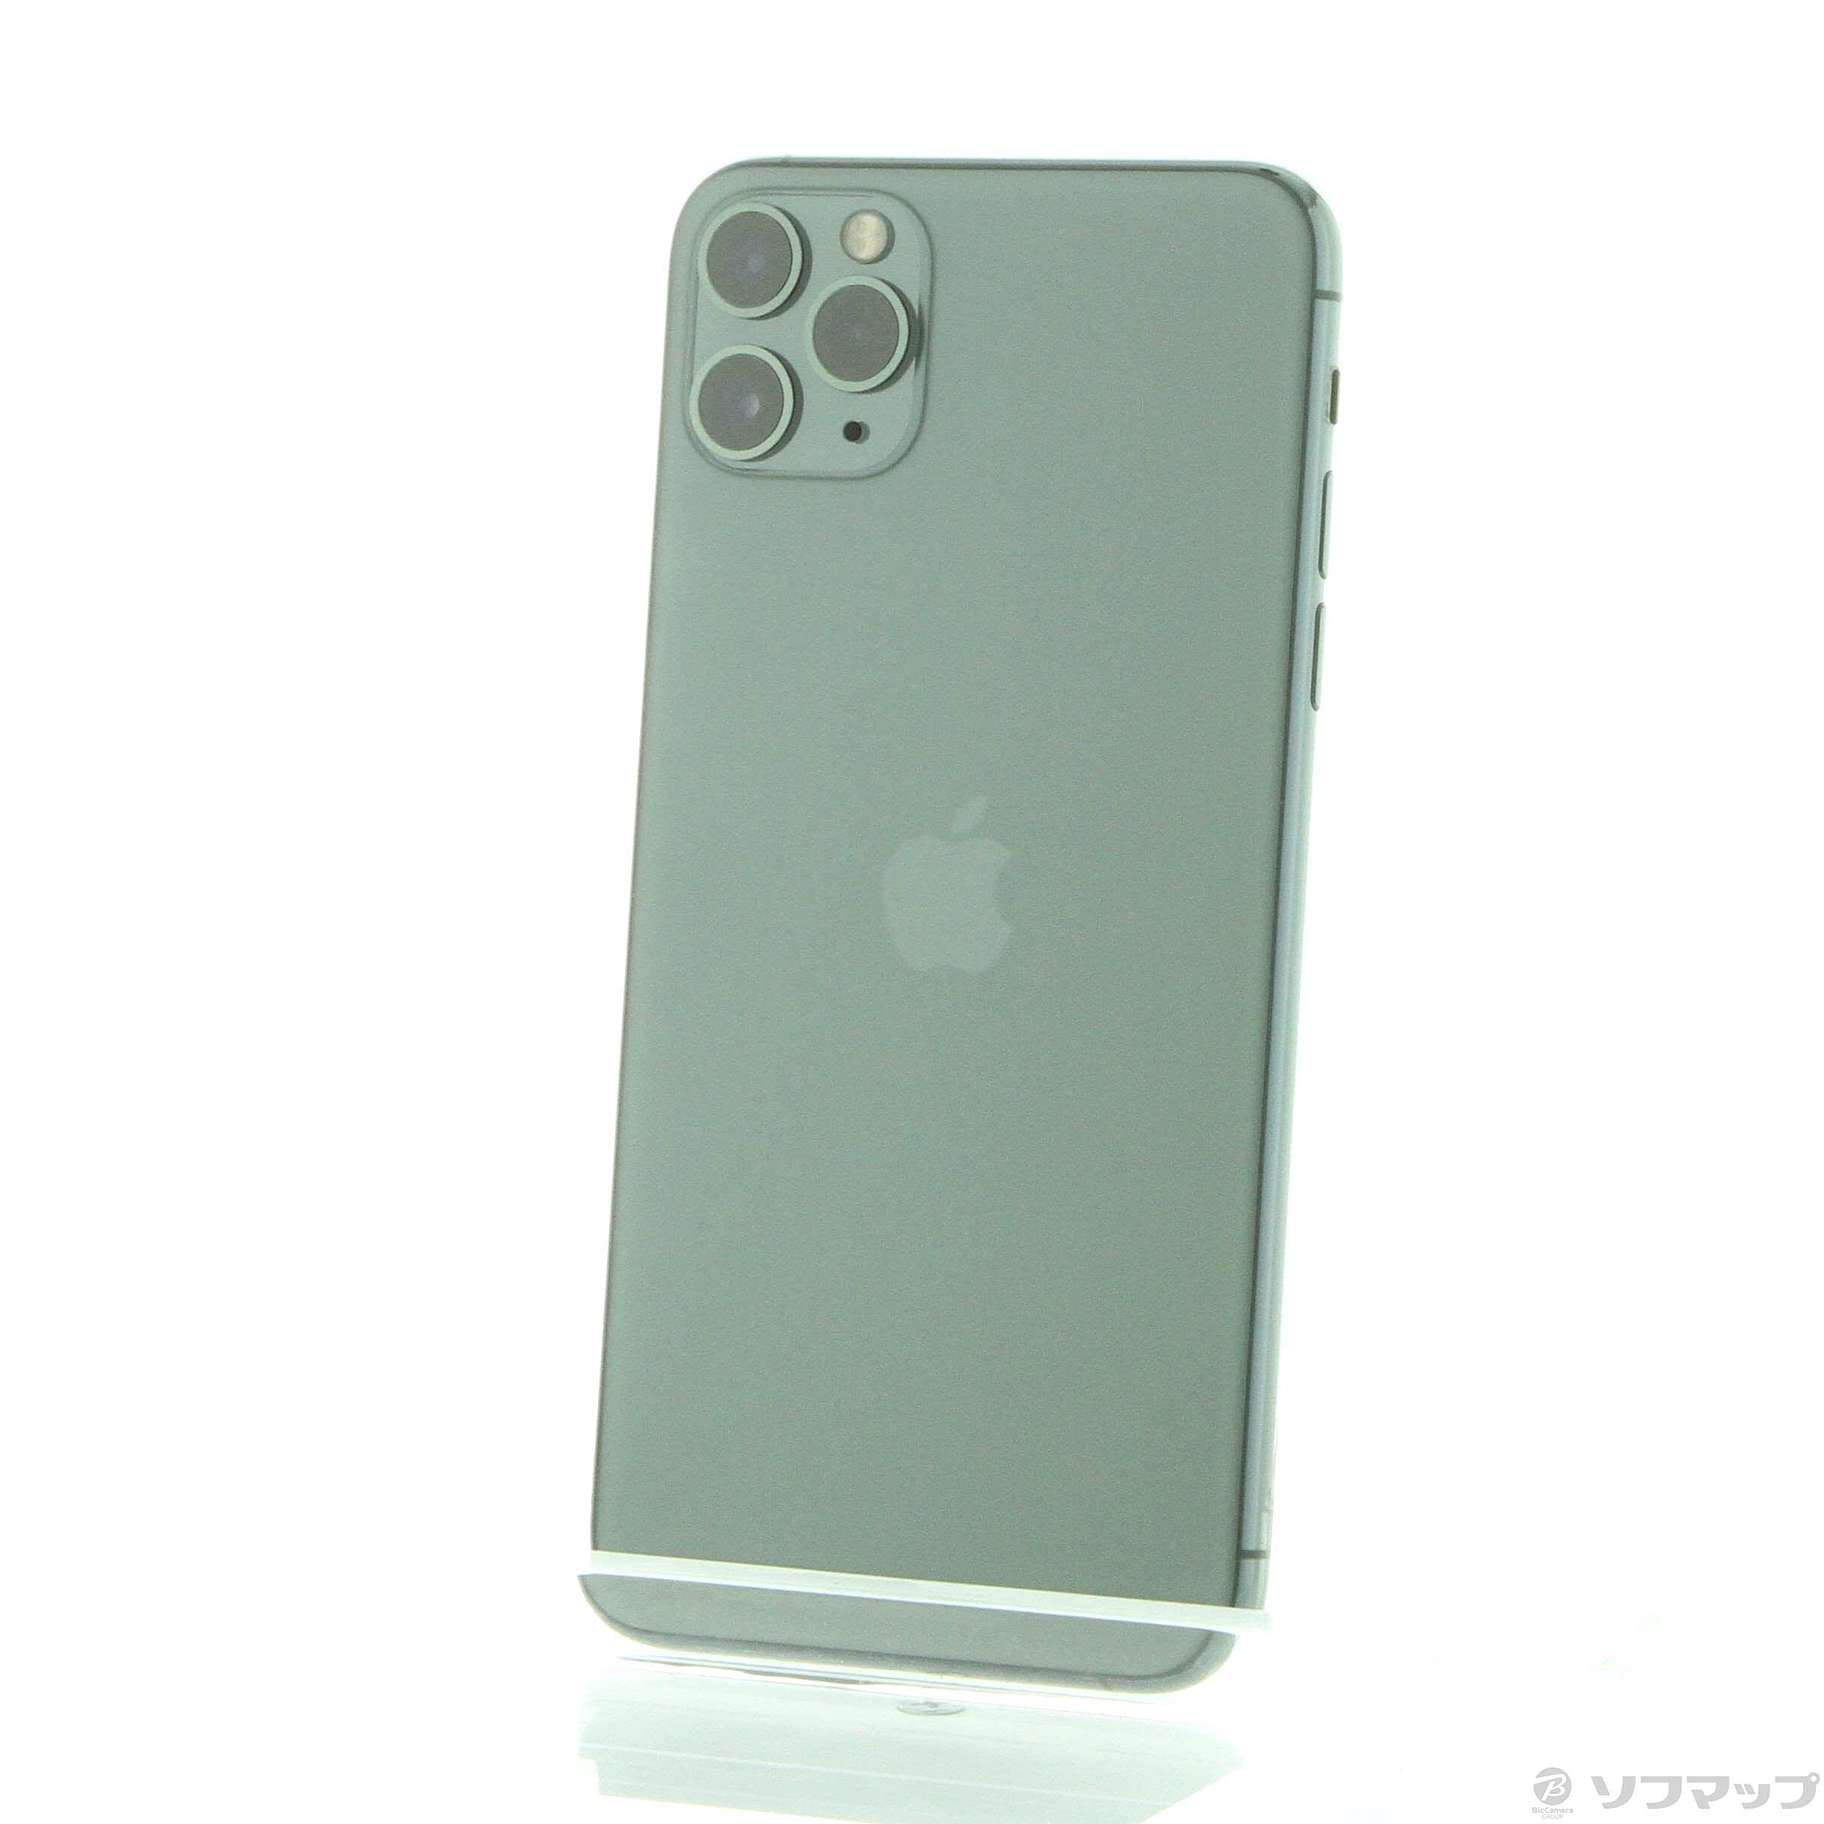 スマートフォン/携帯電話iPhone11 Pro Max 64GB ミッドナイトグリーン 